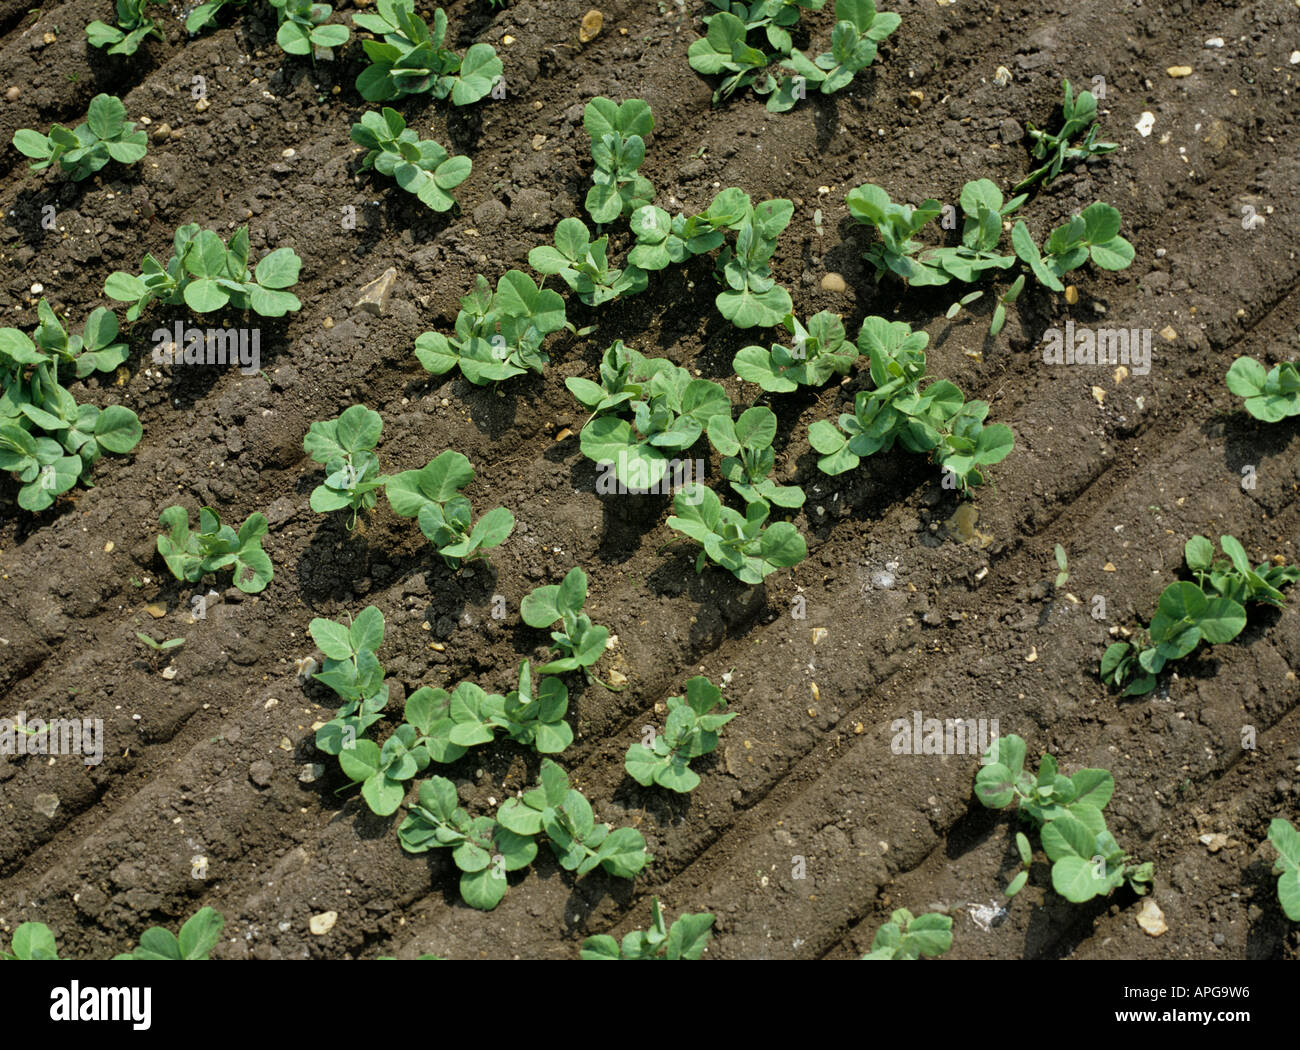 Mirando a la joven plántula desigual cultivo de arveja, con visibles marcas de rodillo Foto de stock